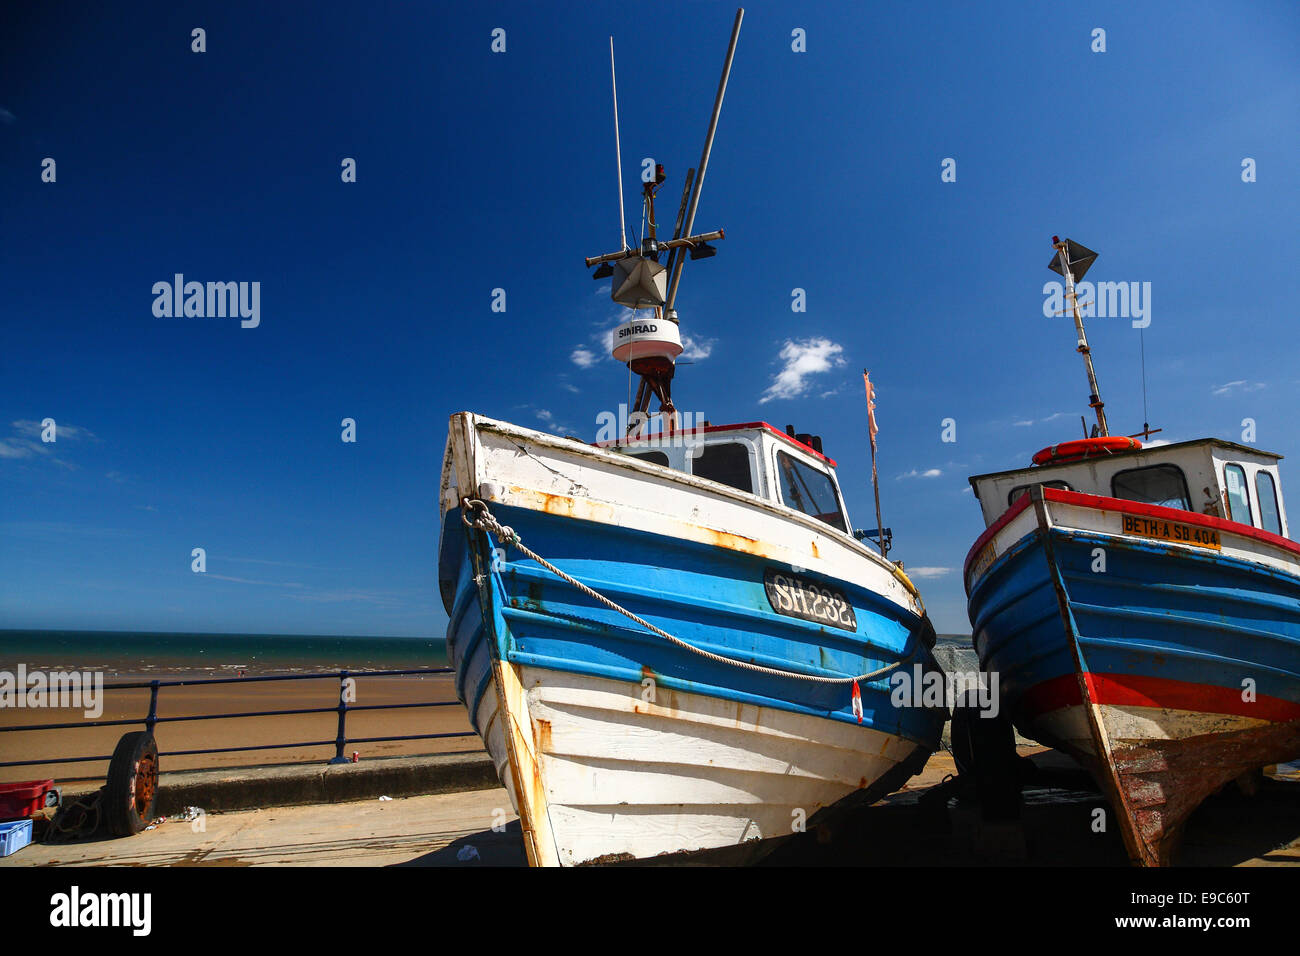 Fishing boats at Filey, Yorkshire Stock Photo